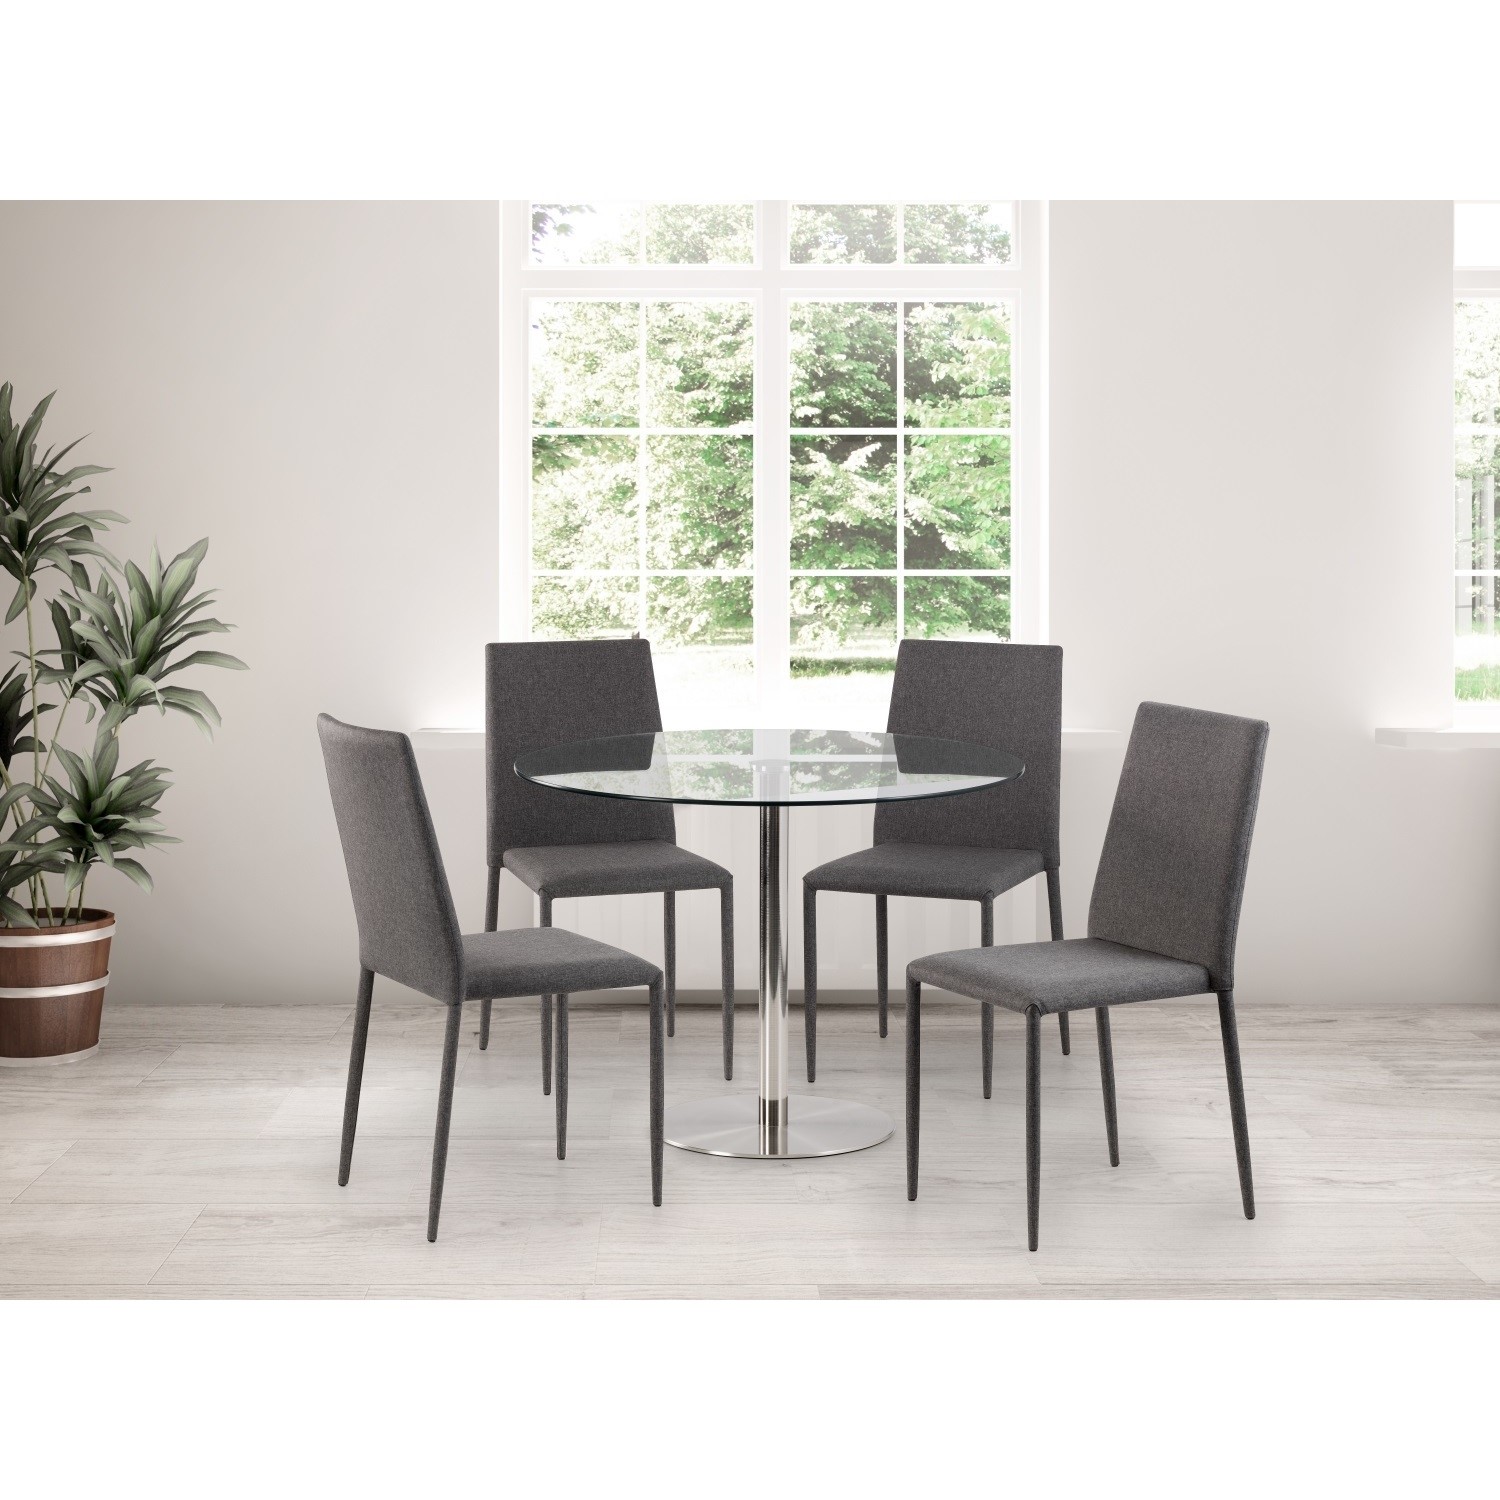 julian bowen milan dining set with 4 grey jazz dining chairs